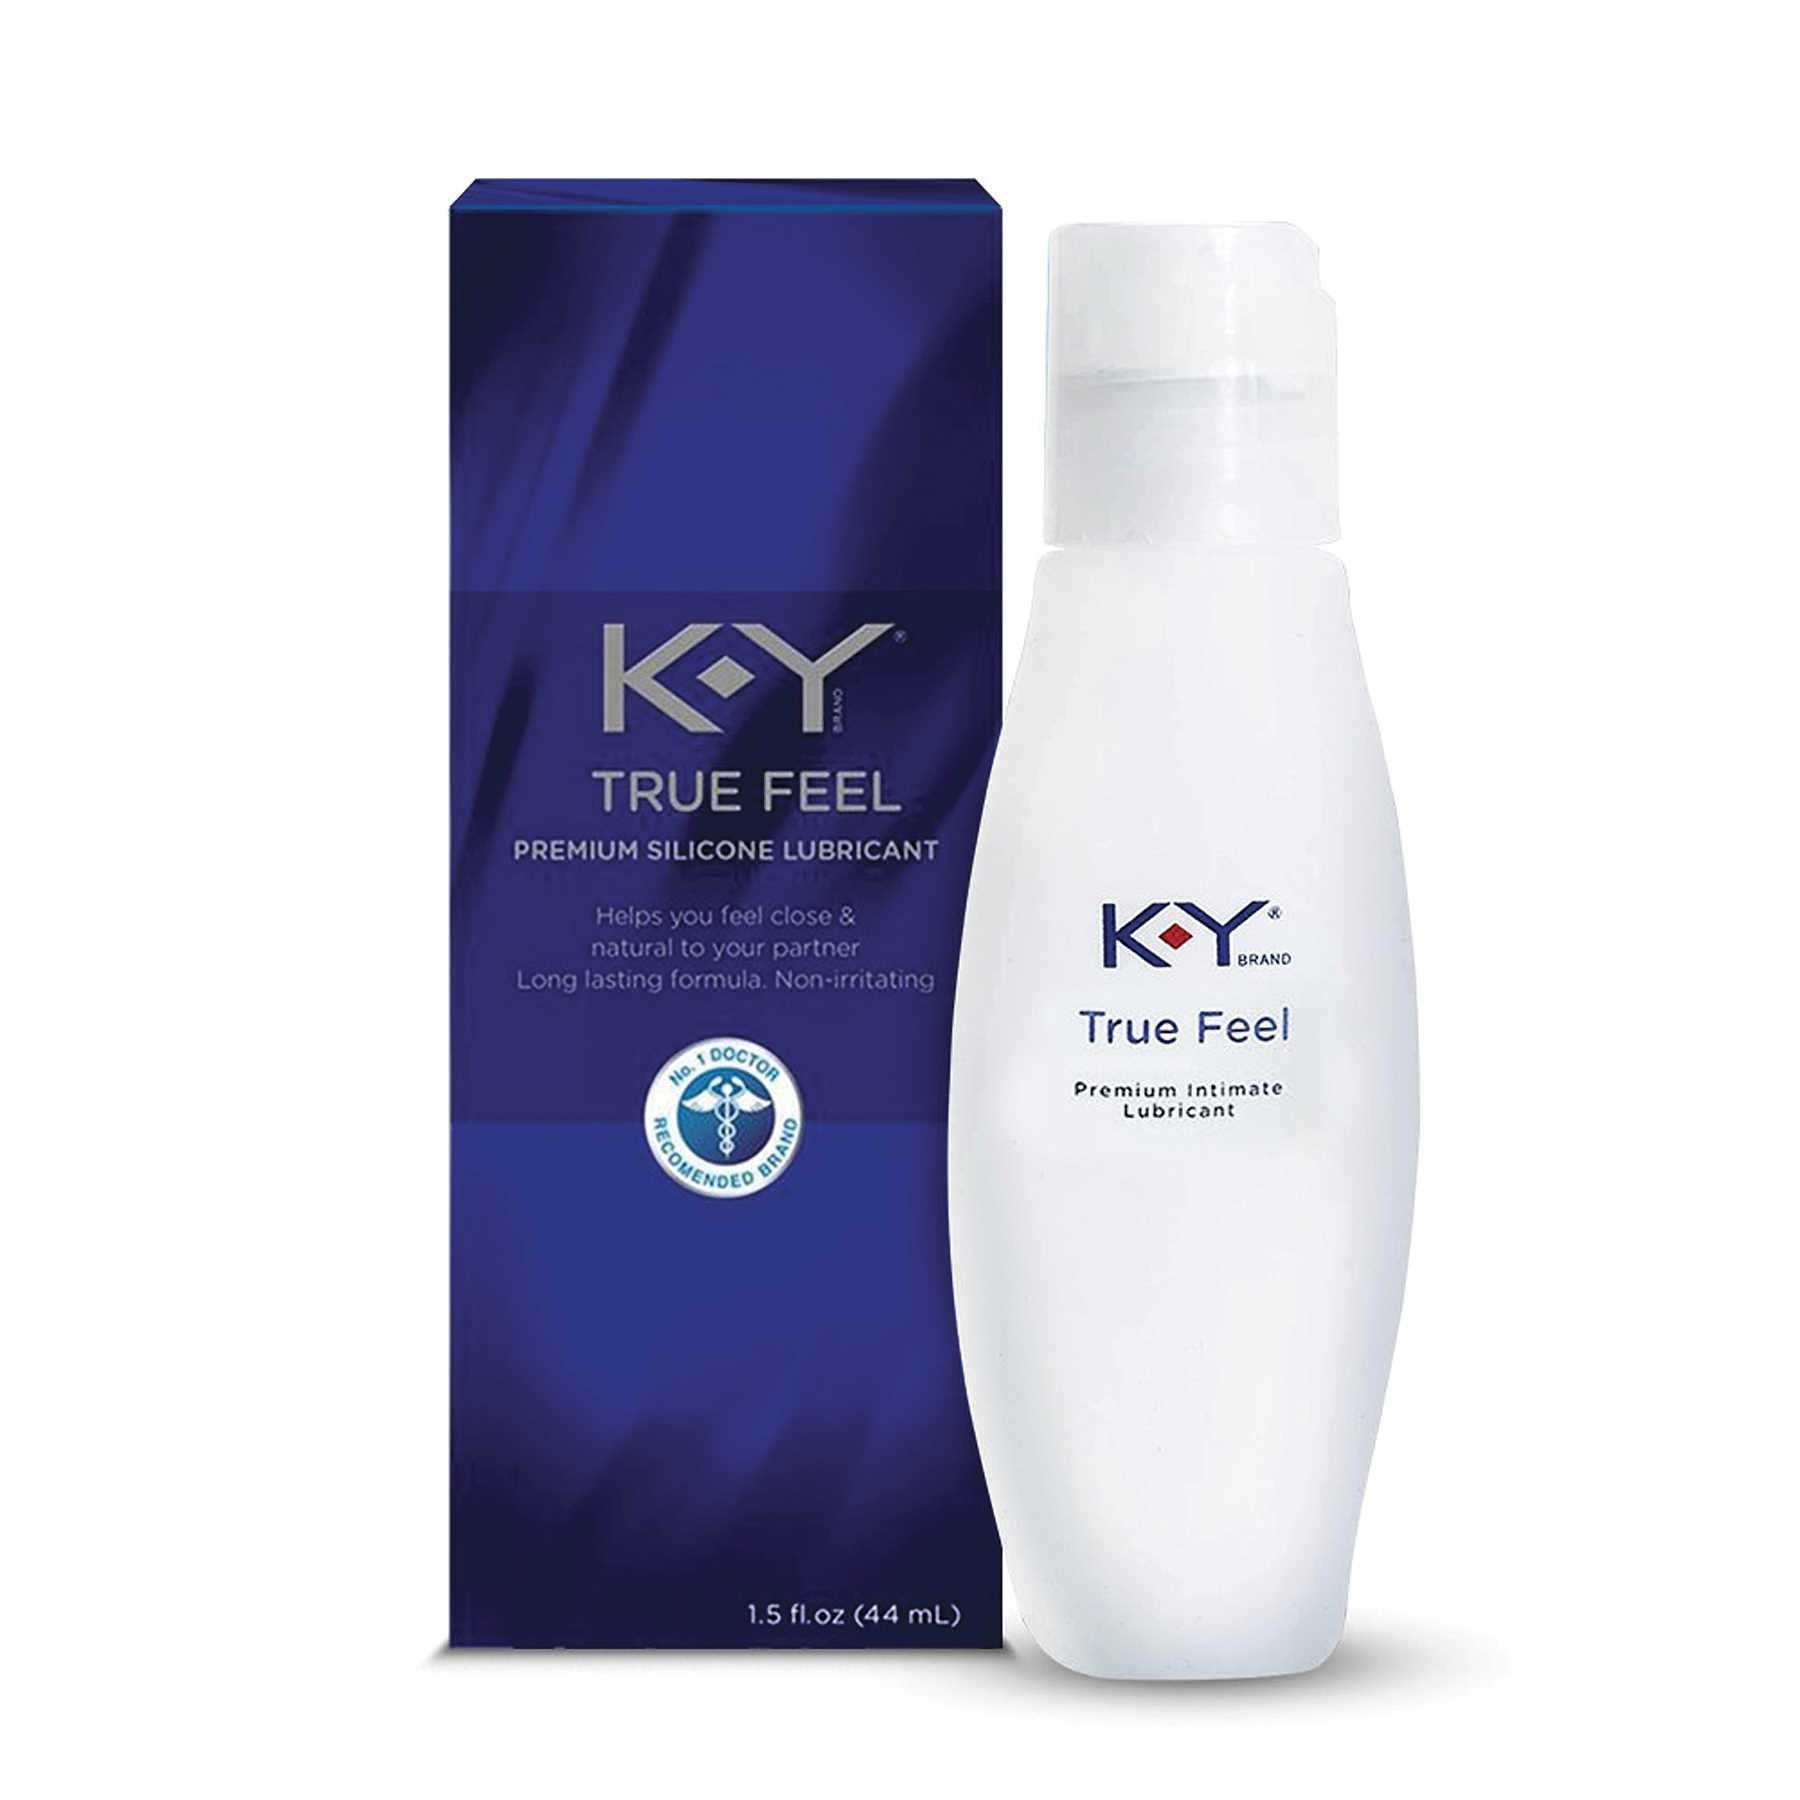 K-Y True Feel Premium Silicone Lubricant bottle